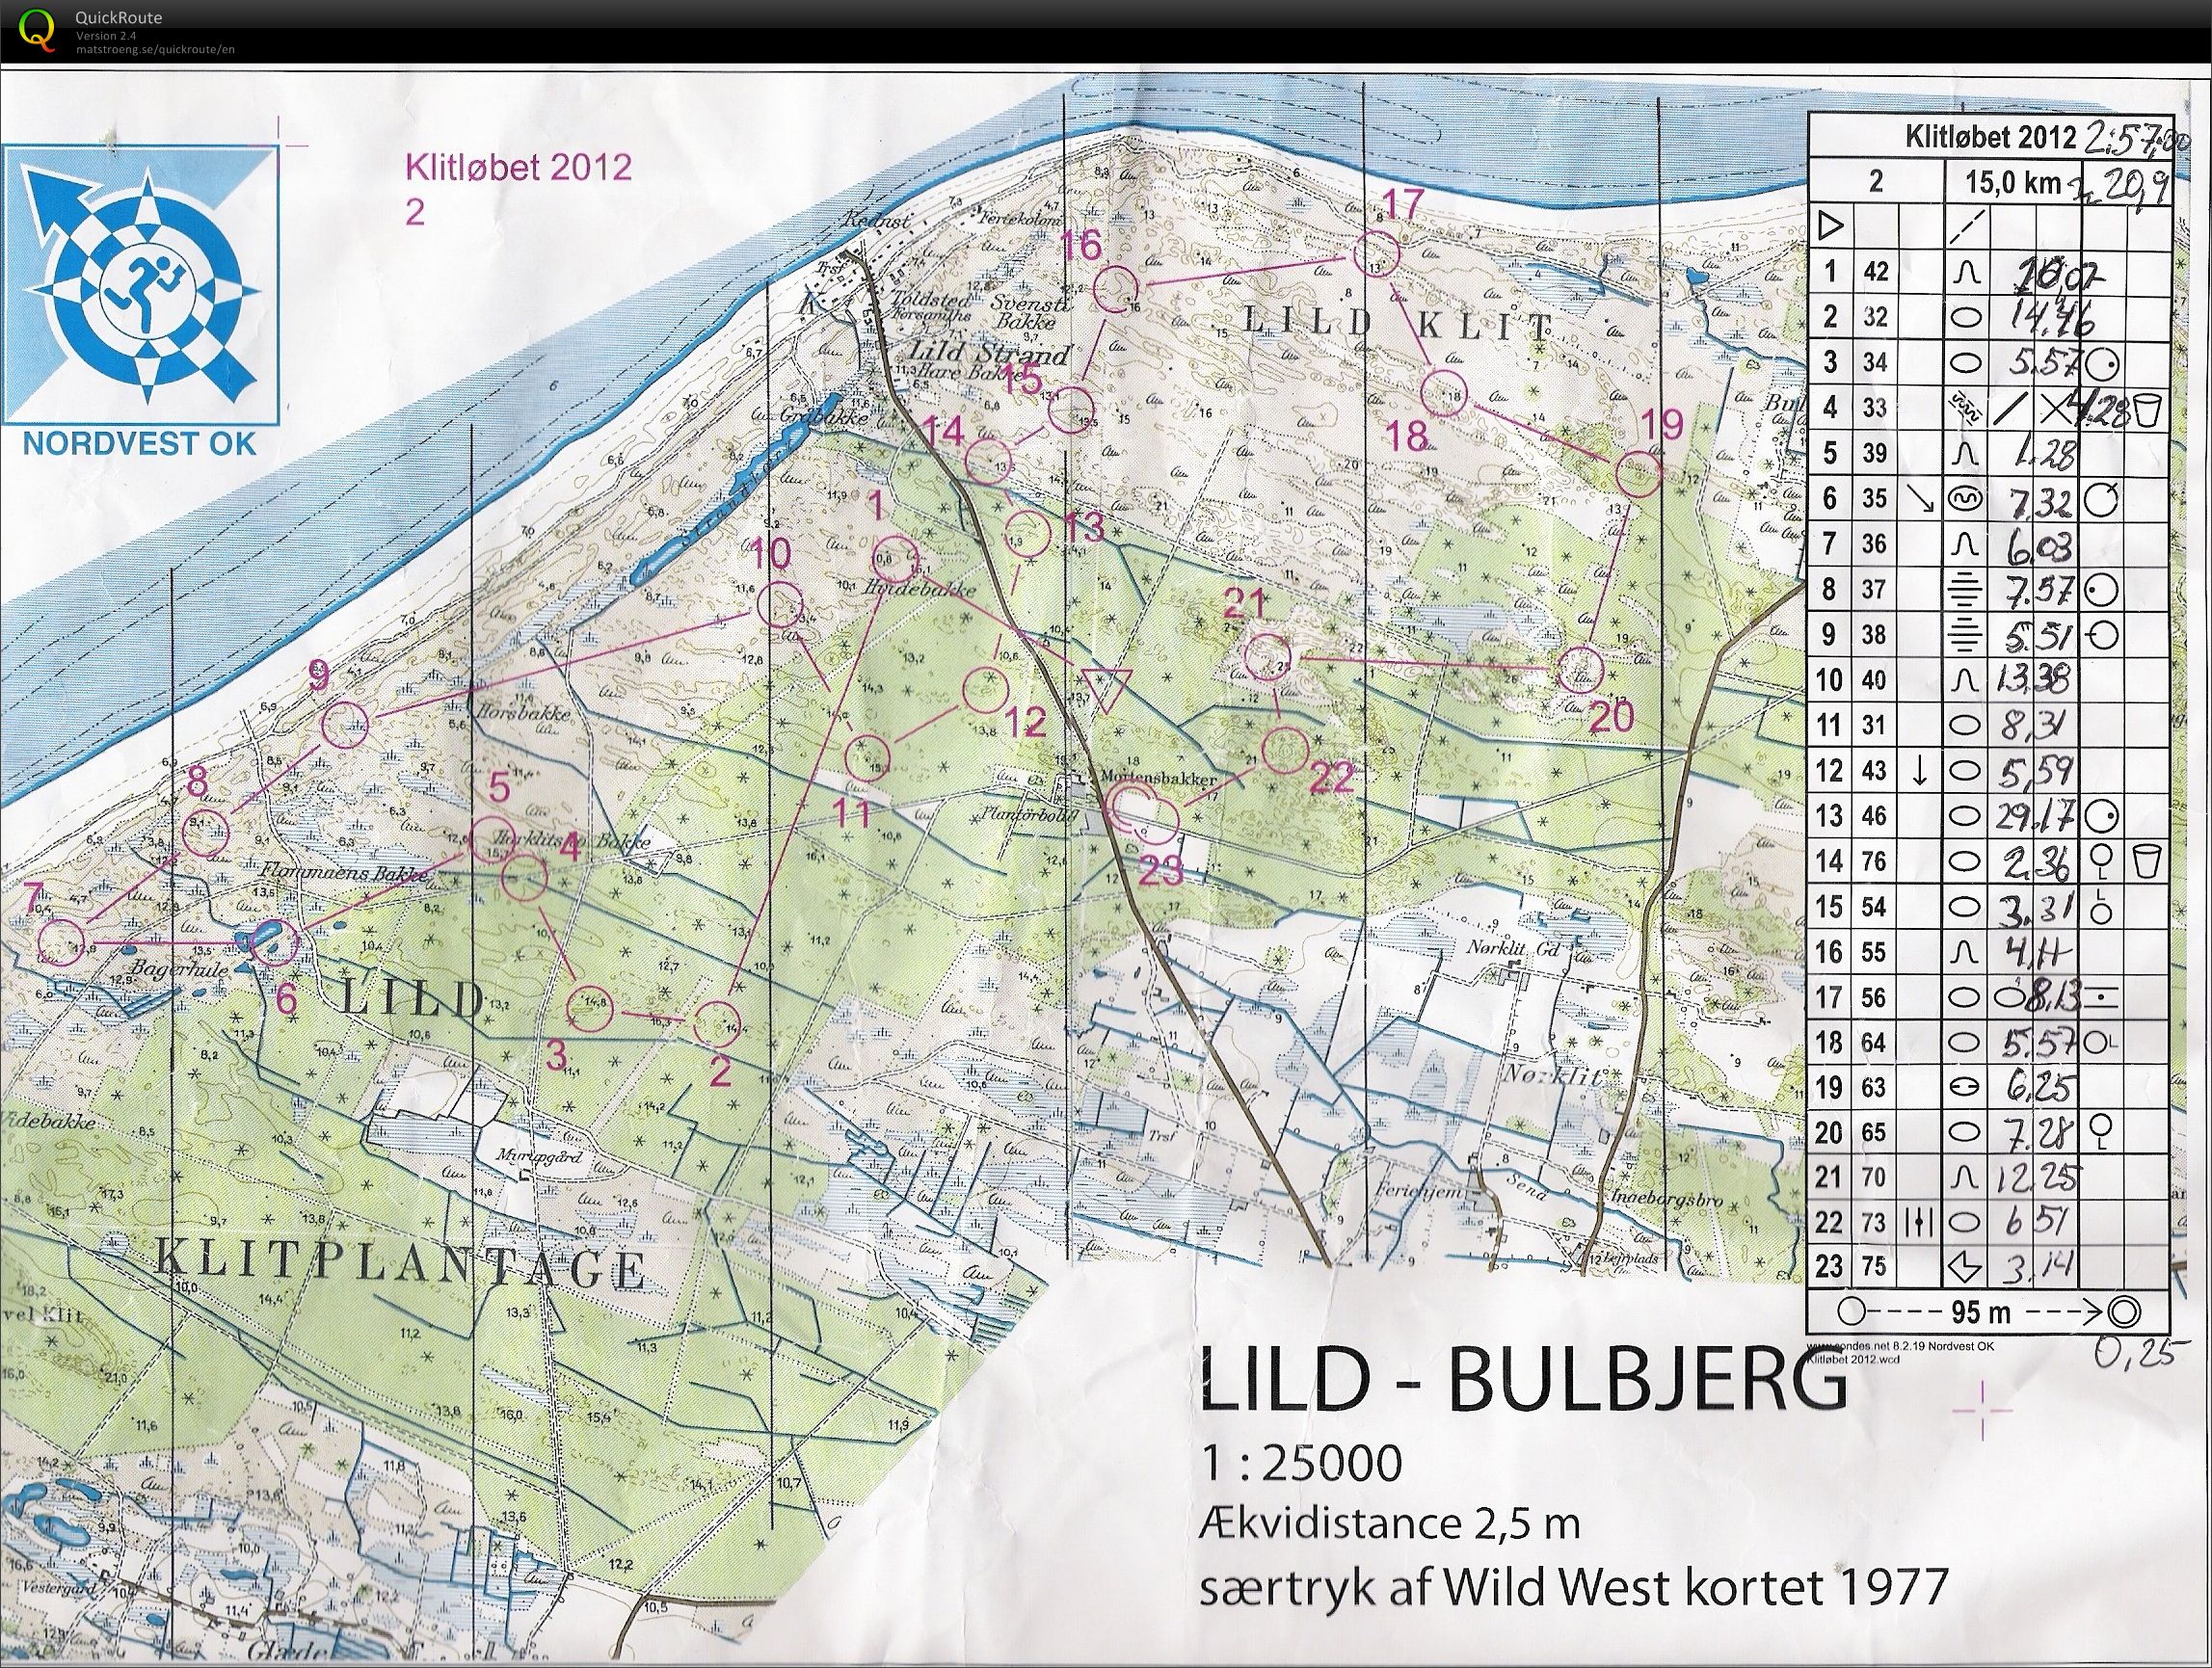 Klitløbet - Lild-Bulbjerg - 2012 (17-06-2012)